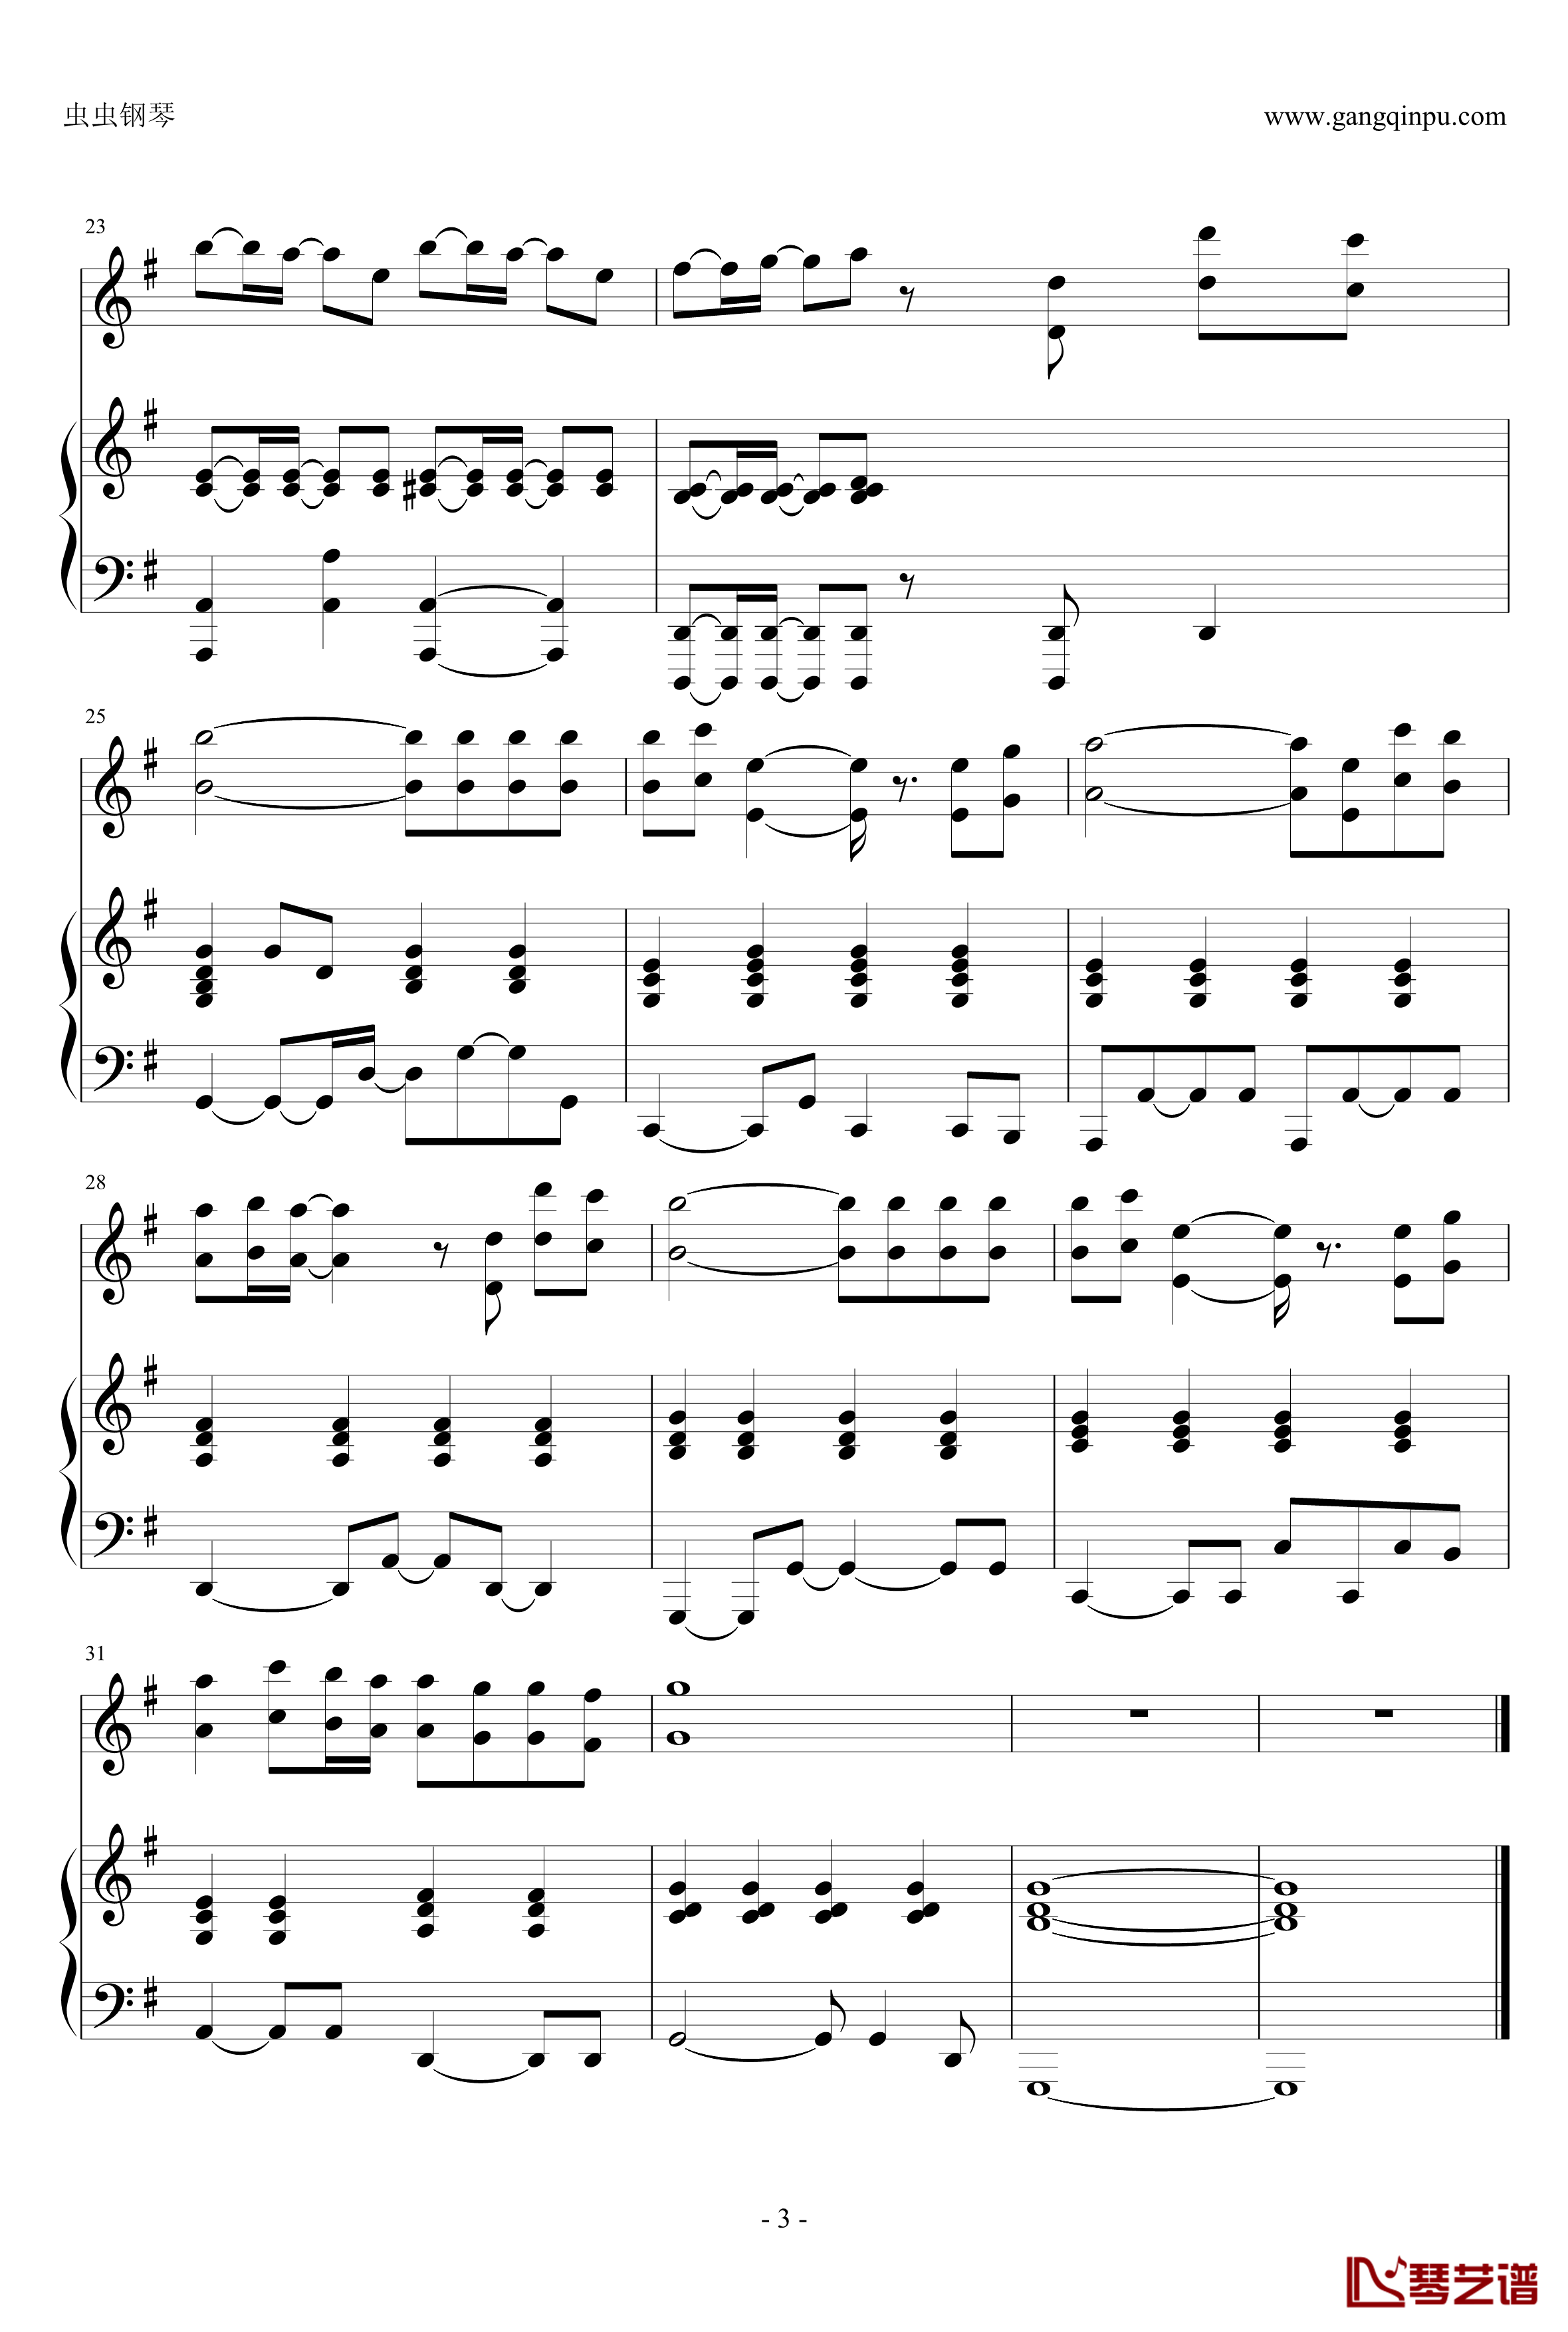 マイバラード钢琴谱-钢琴伴奏谱-日常ED-163